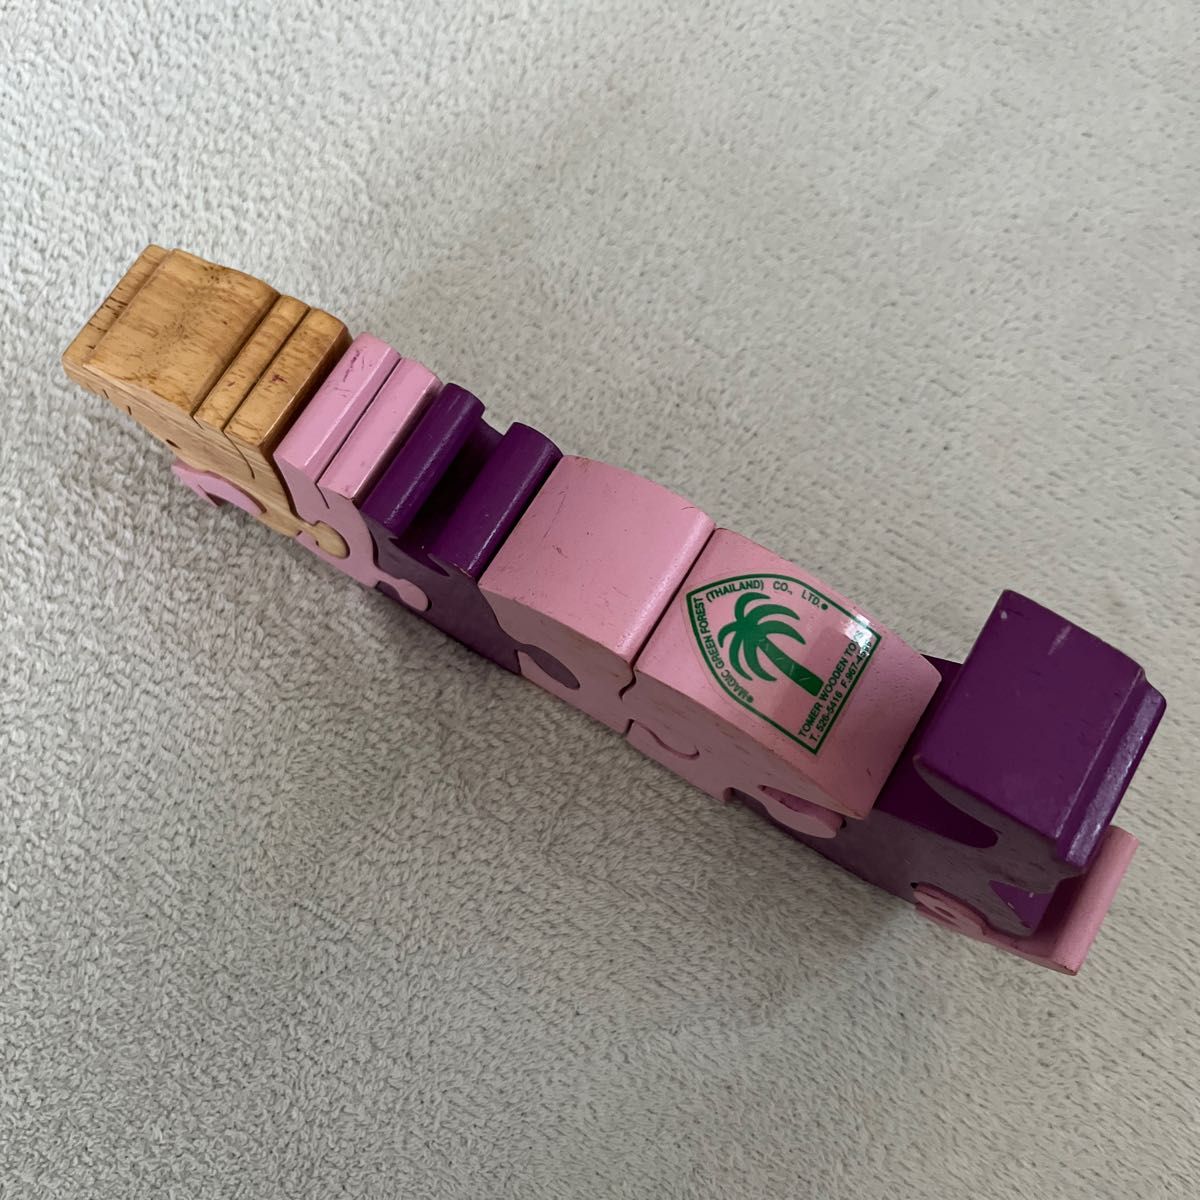 【知育玩具】おしゃれ 木製 積み木 パズル ぶた pig ピンク紫 北欧 木のおもちゃ  木製パズル